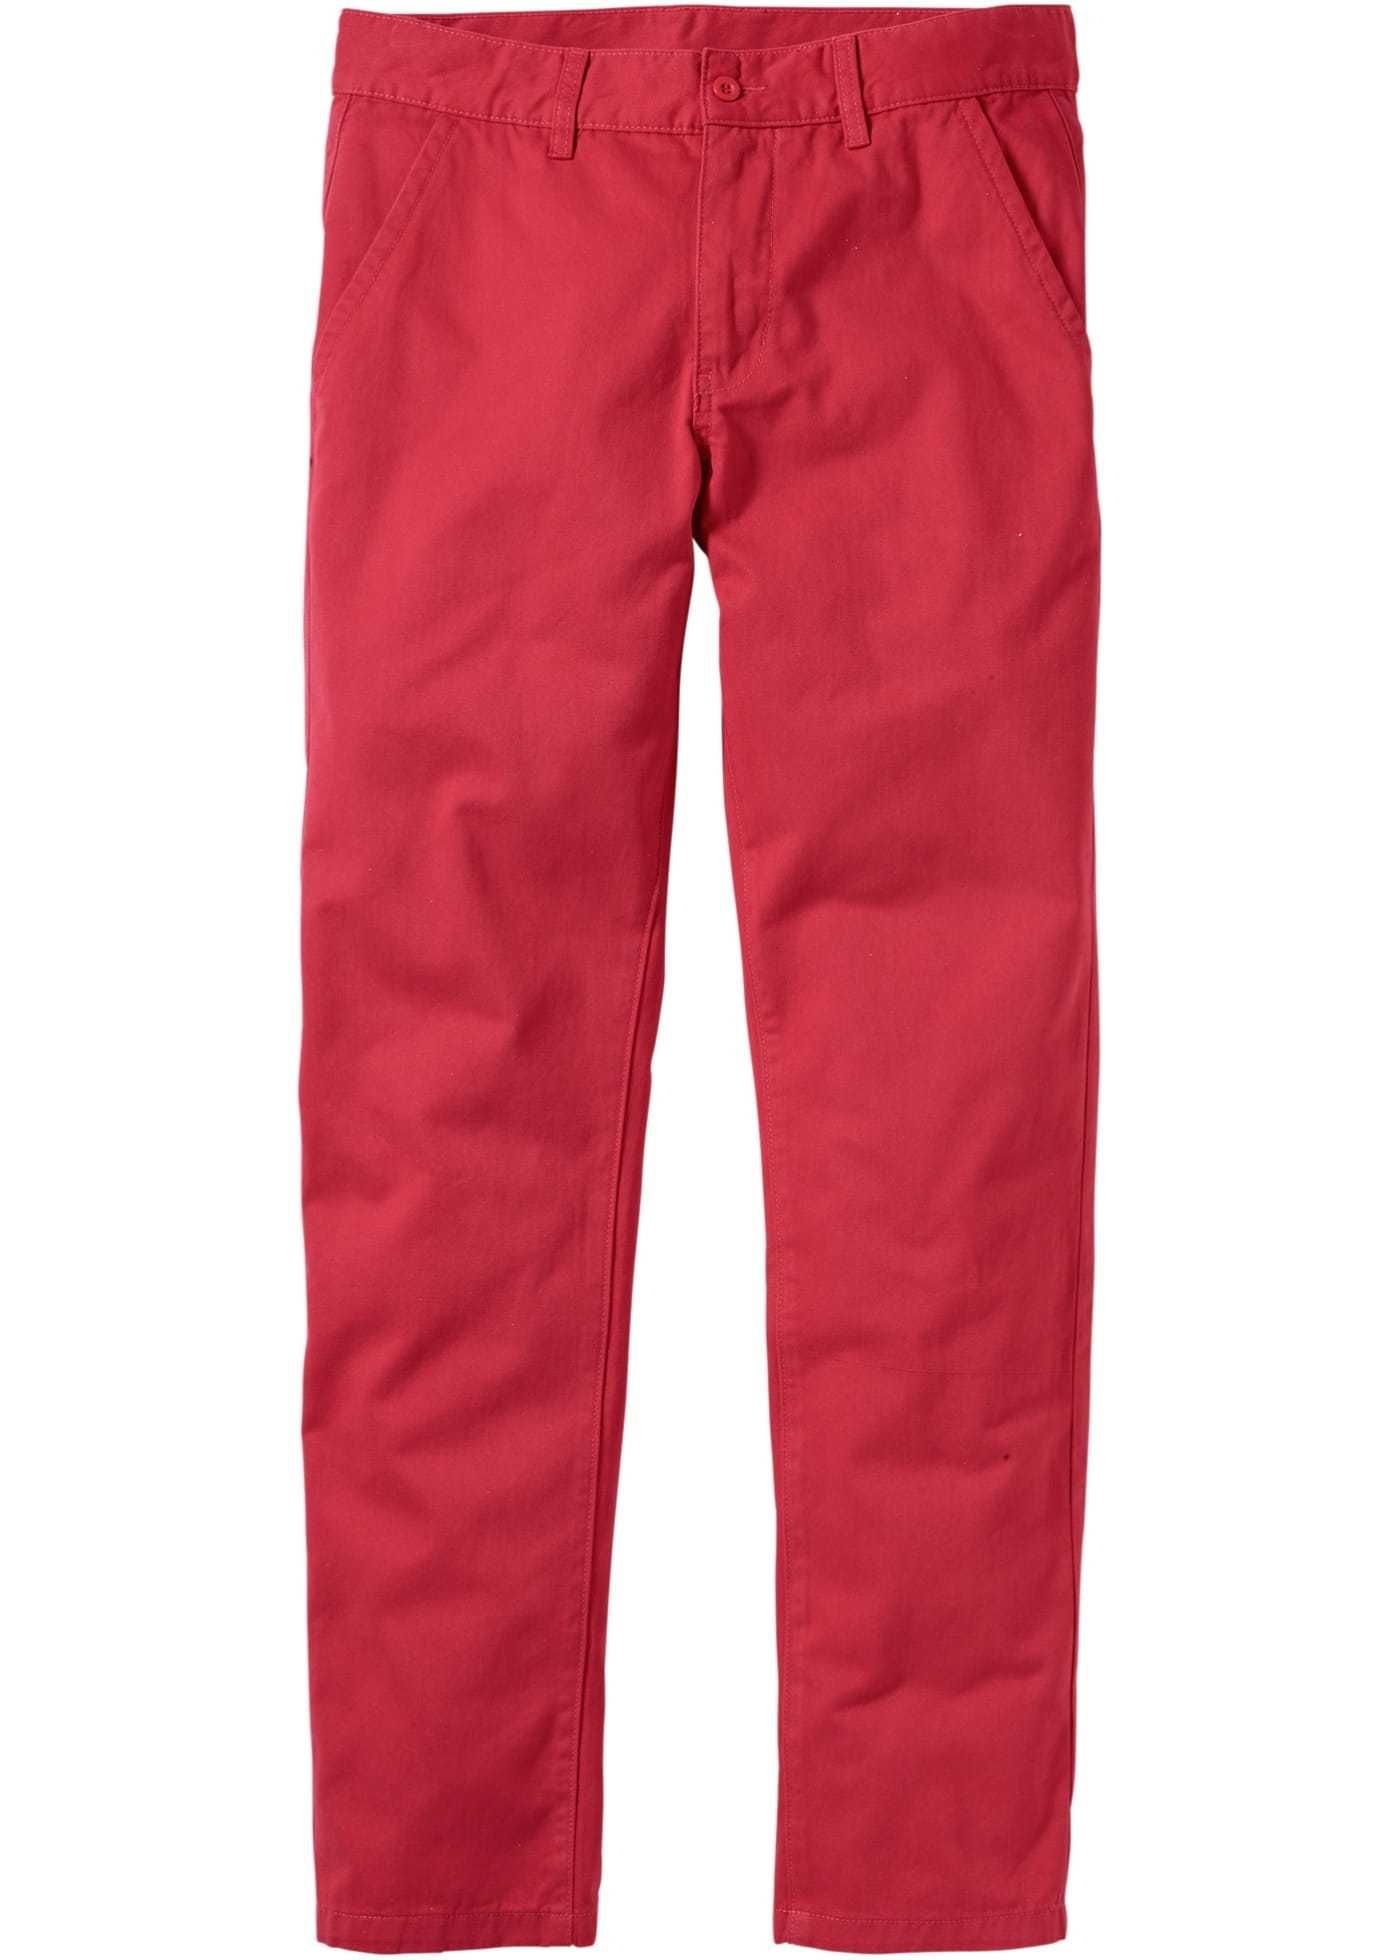 Spodnie męskie czerwone !00% Bawełna Rozmiar 46